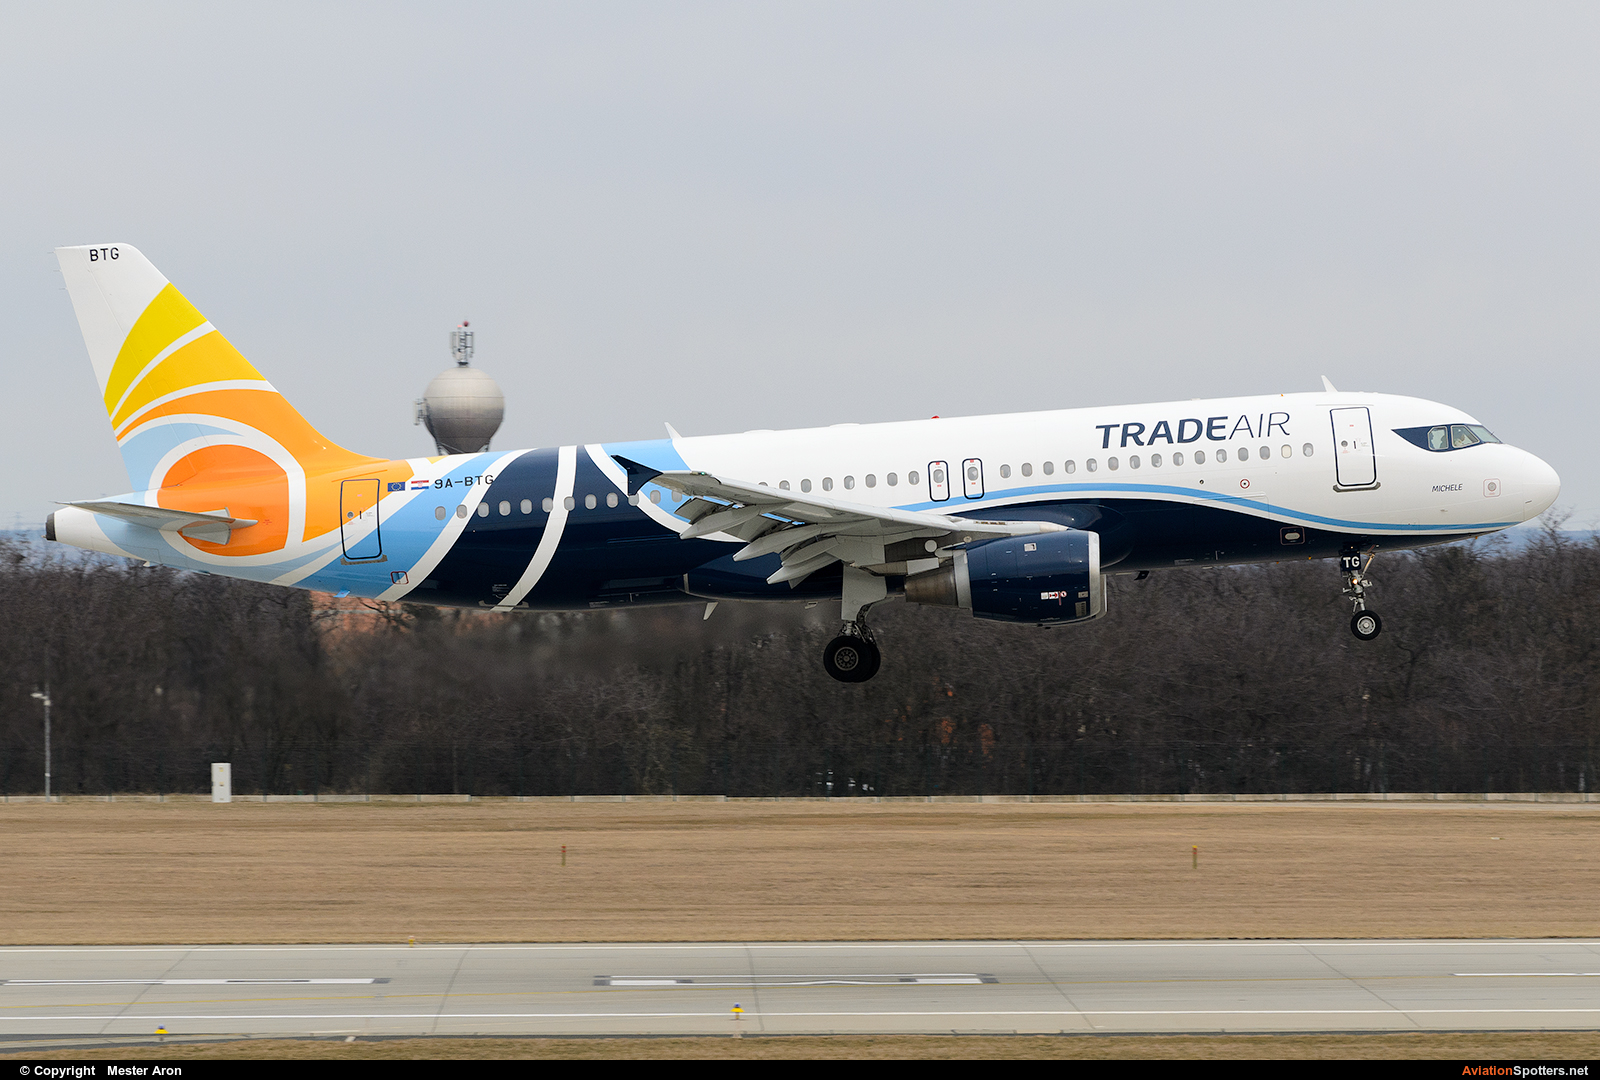 Trade Air  -  A320  (9A-BTG) By Mester Aron (MesterAron)